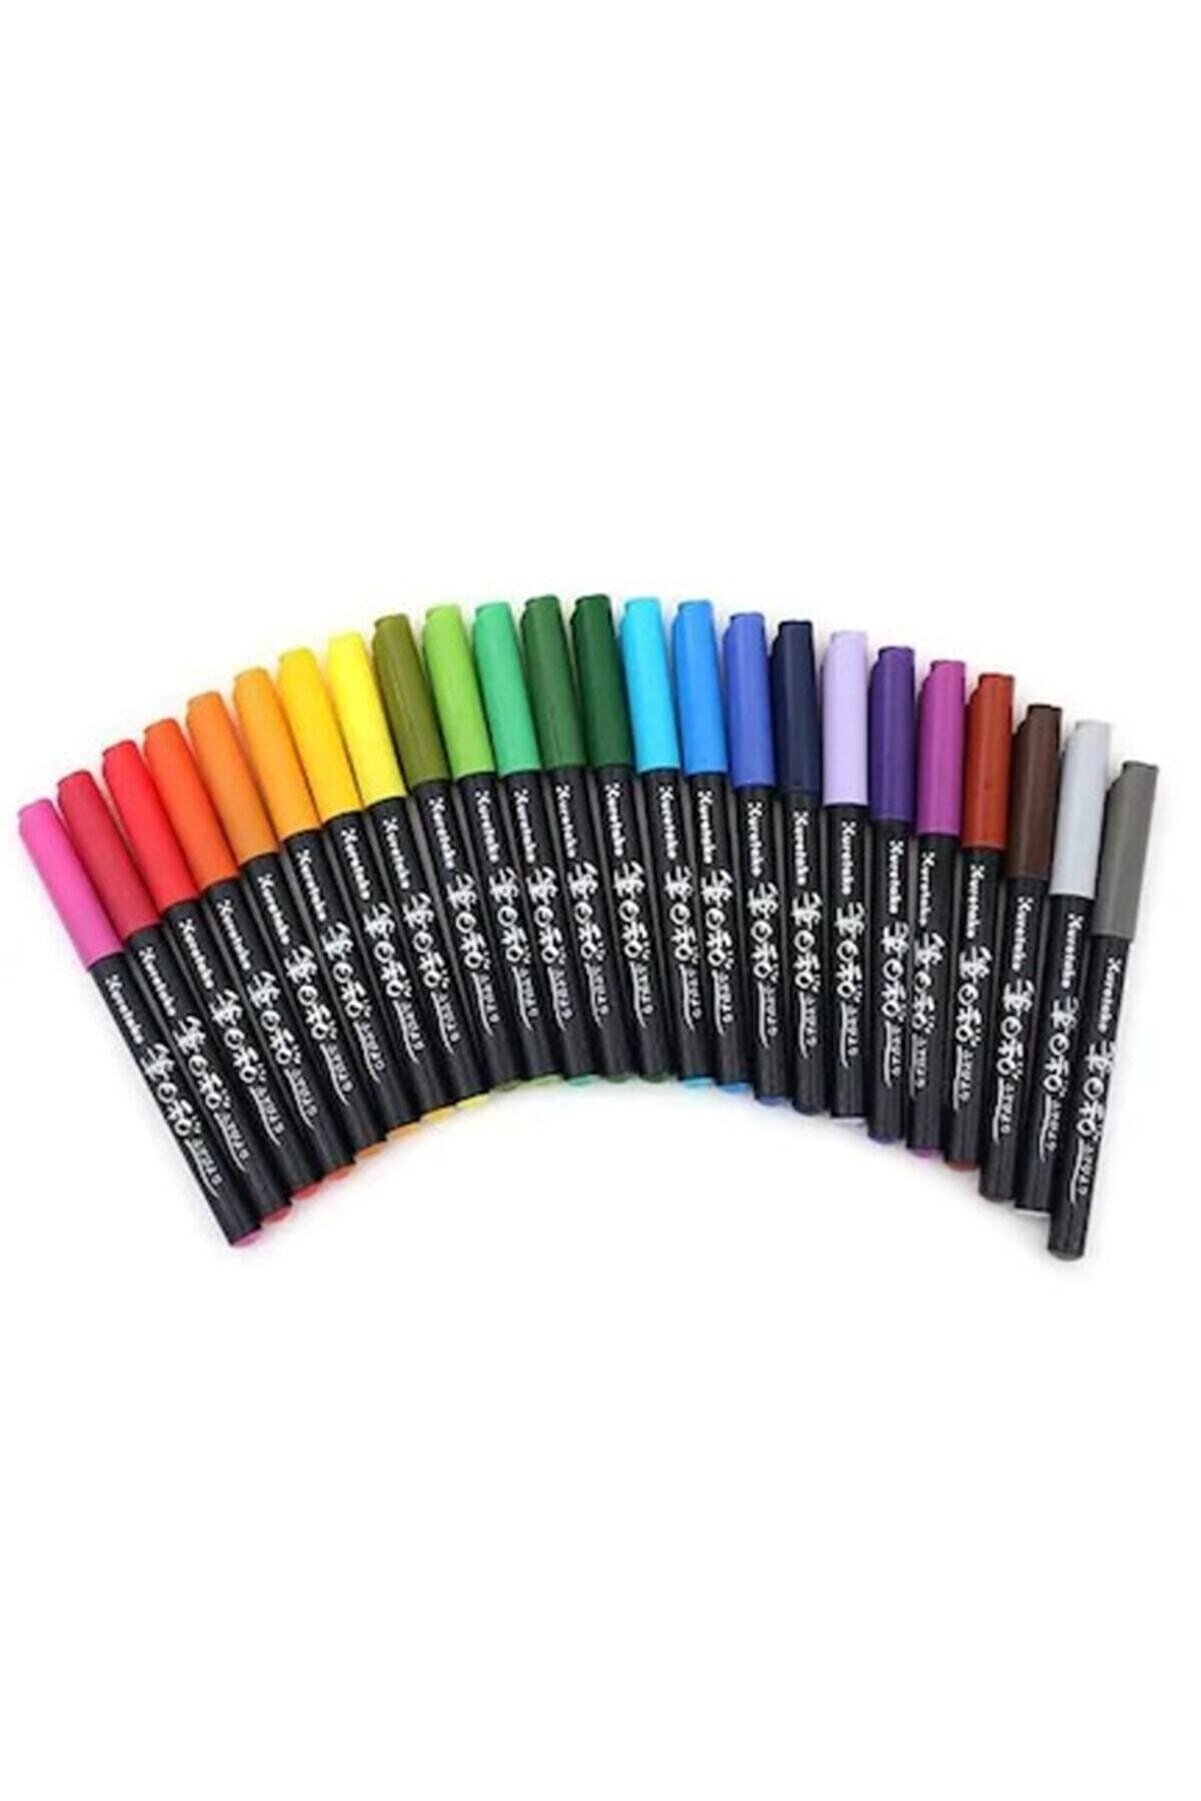 Zig Fudebiyori Brush Pen Fırça Uçlu Kalem Seti 18 Renk